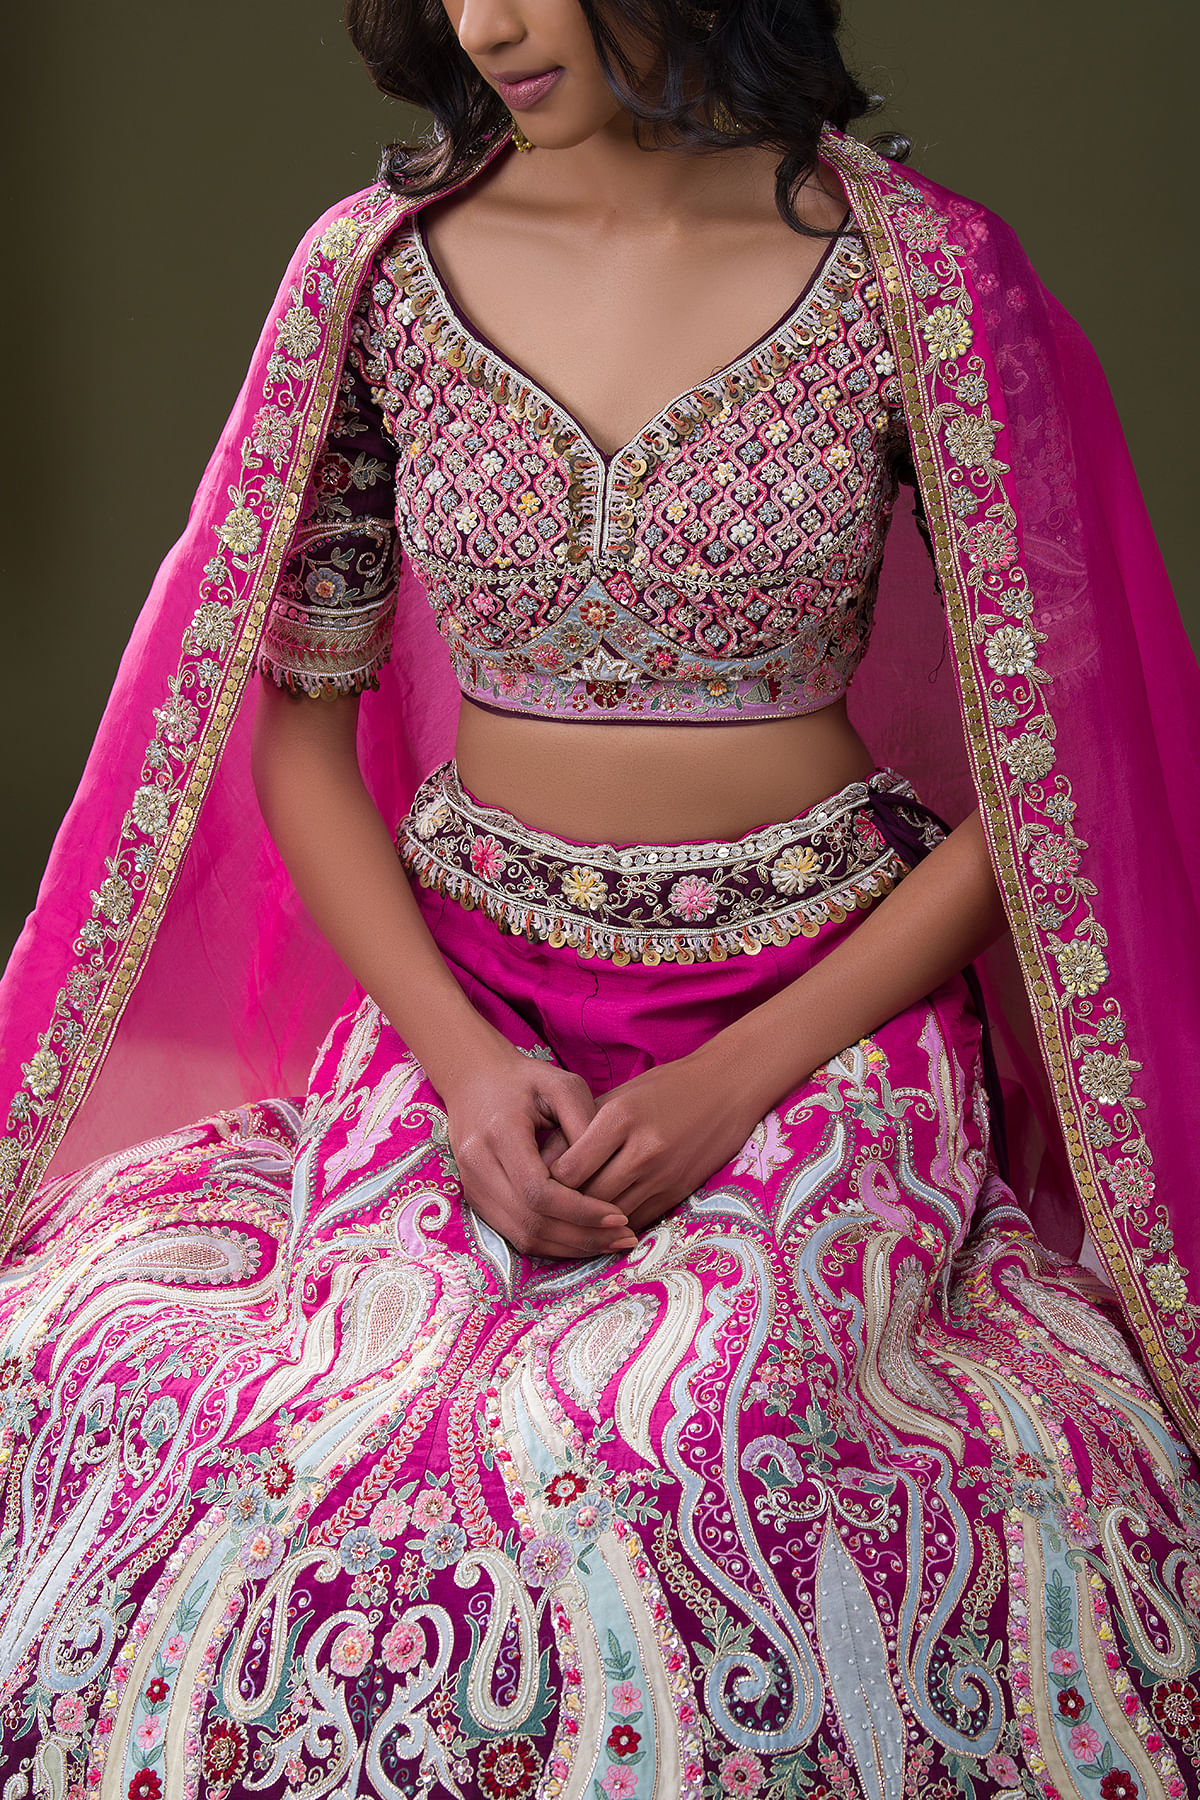 Stunning Rani Pink Lehenga | Indian wedding wear, Pink lehenga, Bridal hair  and makeup